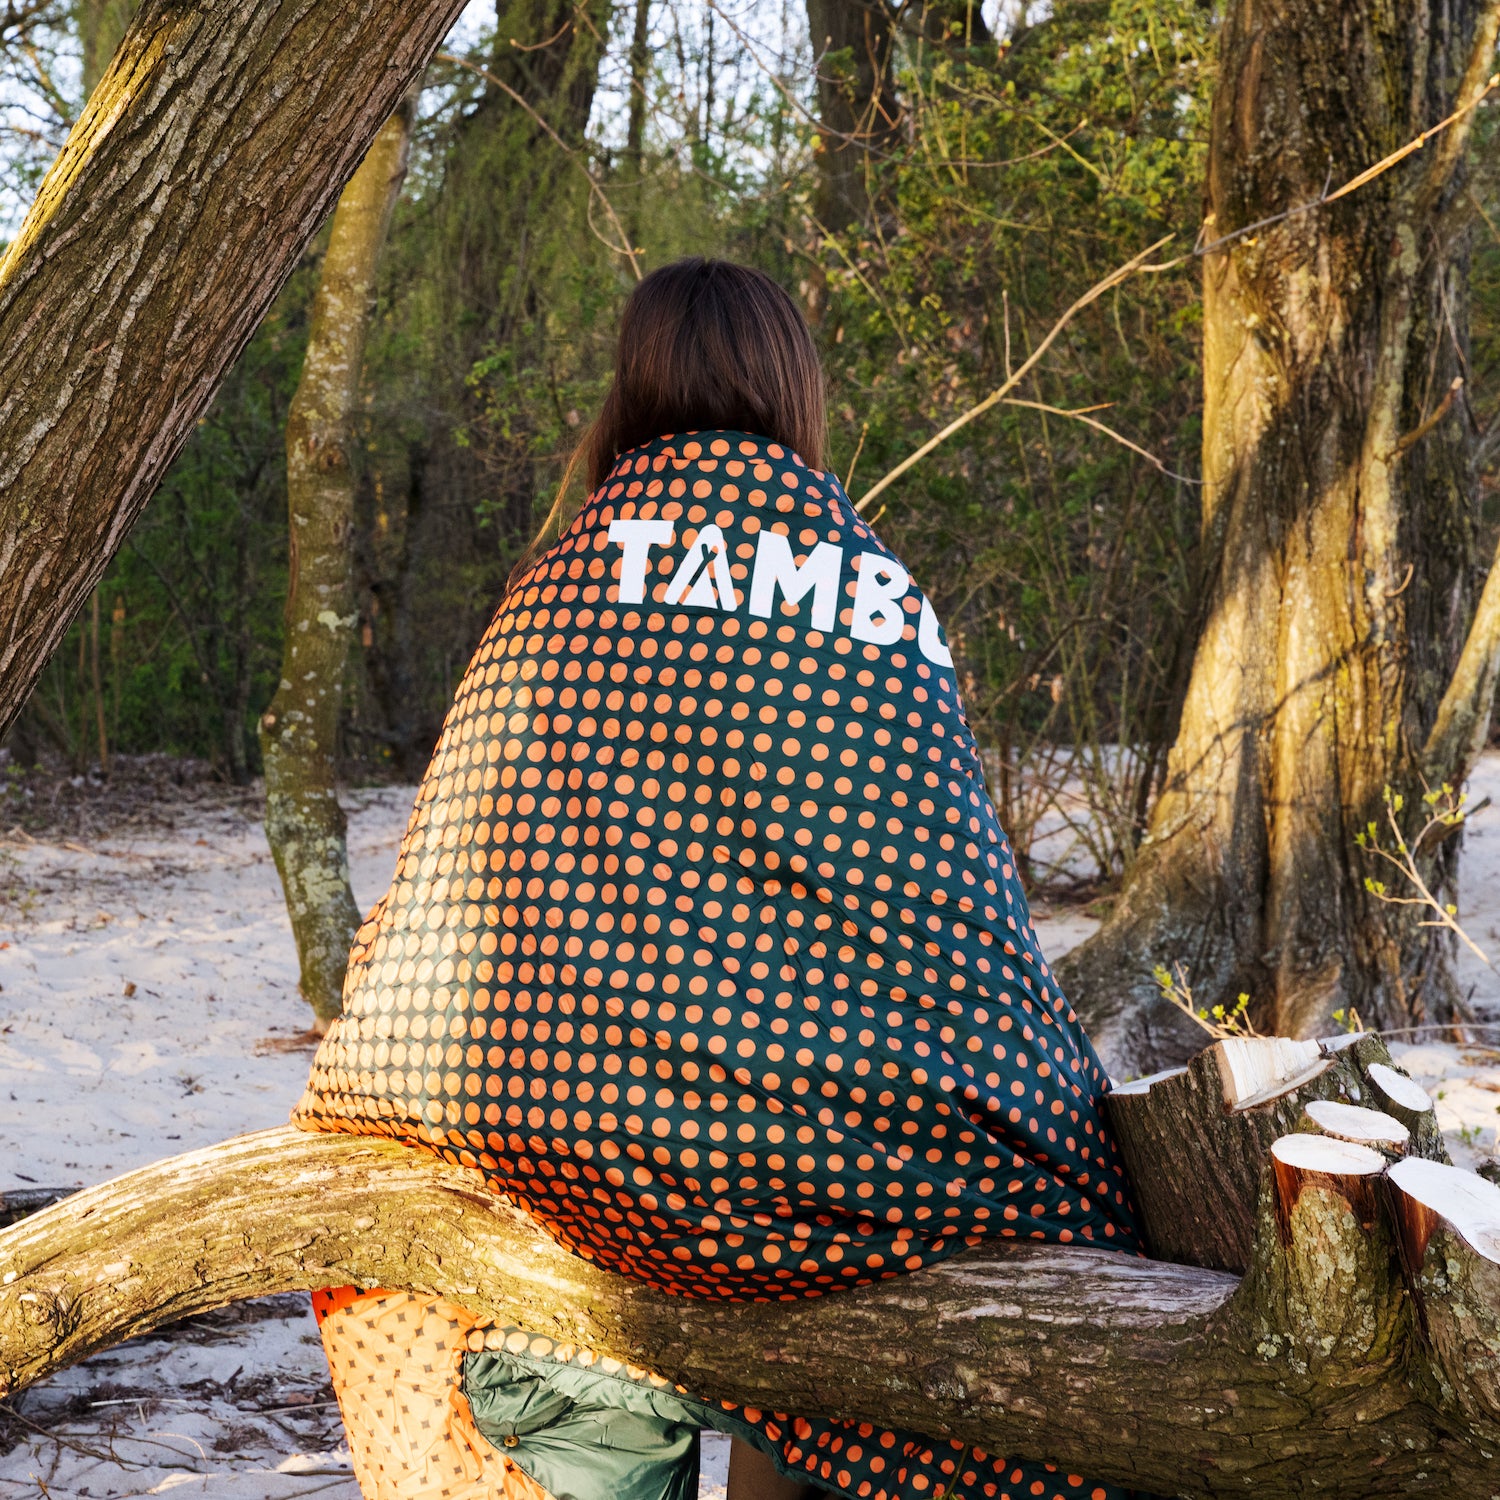 1 Stück Camping Decke Im Kilim-stil, Geeignet Für Zelt, Picknick